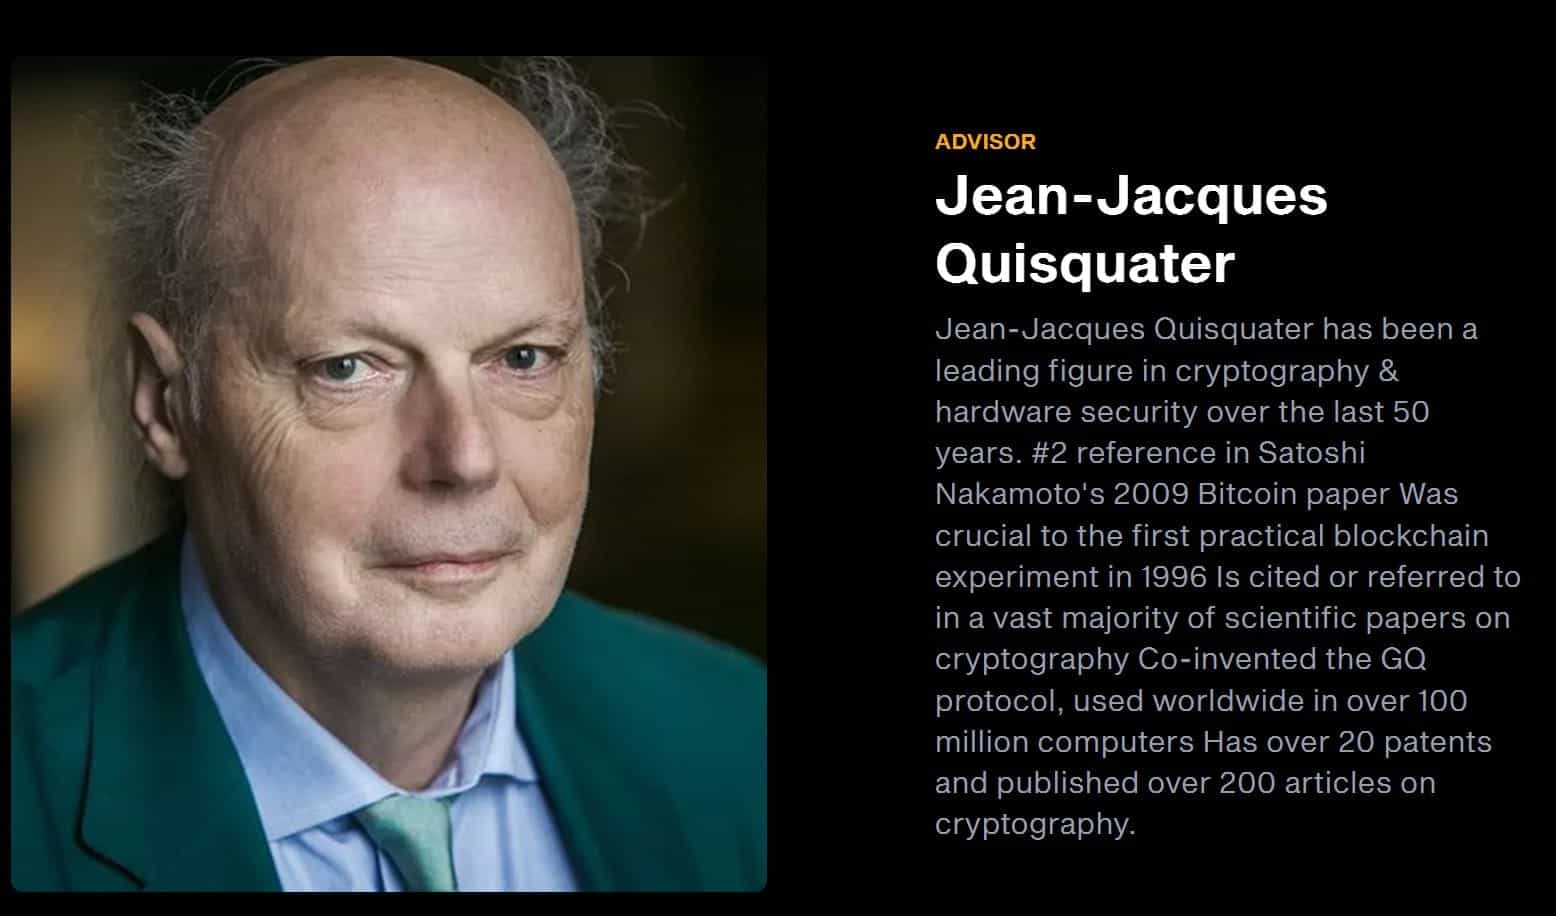 Jean-Jacques Quisquater